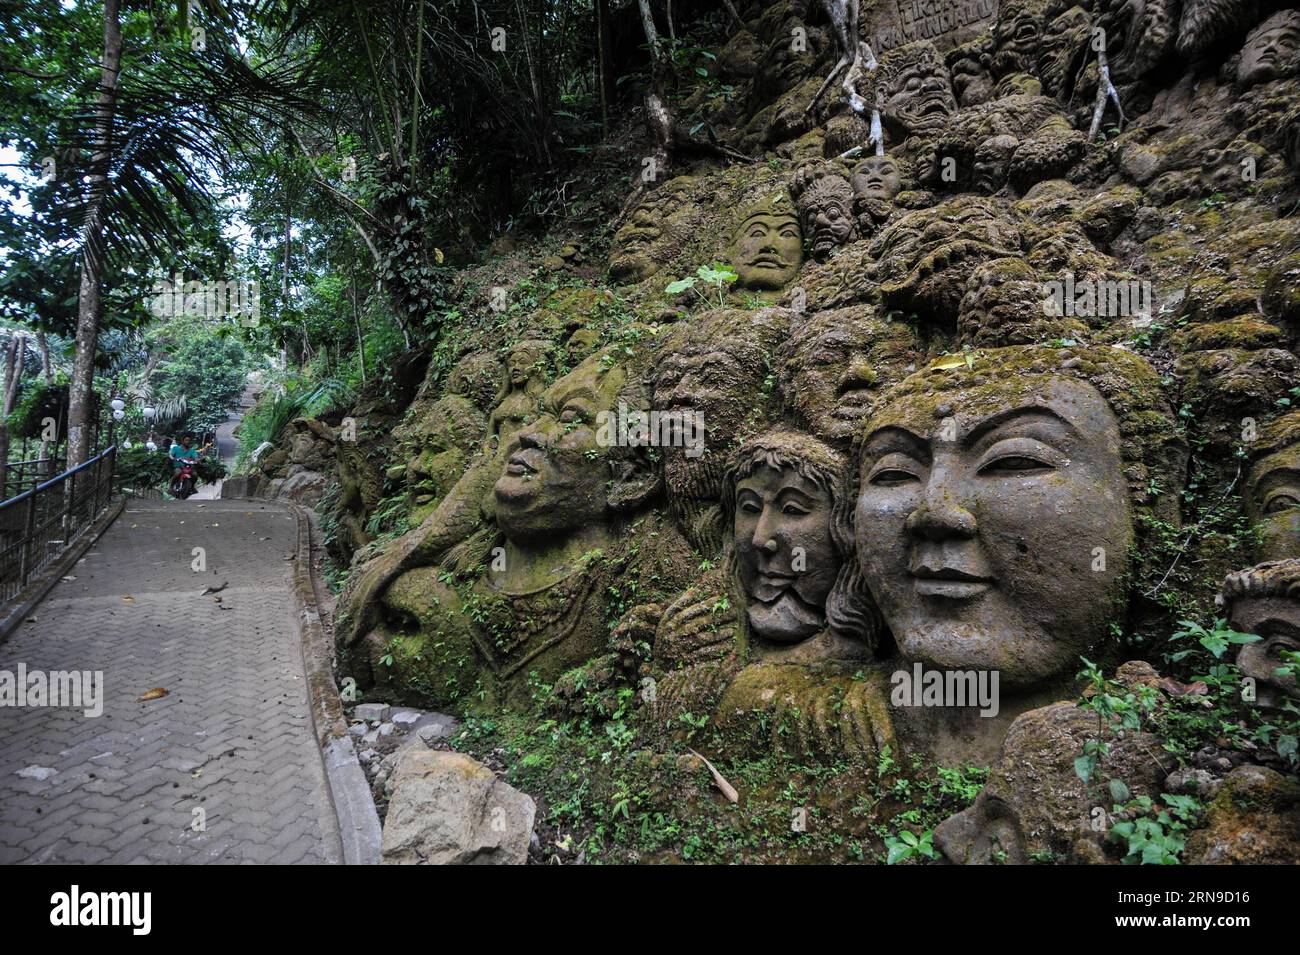 (151129) -- BALI, 29 novembre 2015 -- la photo prise le 29 novembre 2015 montre des sculptures en pierre sur la falaise de Ayung Resort, Ubud, Bali, Indonésie. Ubud est l'une des zones touristiques de Bali célèbre pour sa culture et ses paysages naturels.) INDONESIA-BALI-AYUNG RESORT VerixSanovri PUBLICATIONxNOTxINxCHN 151129 Bali Nov 29 2015 photo prise LE 29 2015 novembre montre sculptures en pierre SUR la falaise À Ayung Resort Ubud Bali Indonesia Ubud EST l'une des zones touristiques de Bali célèbre pour sa culture et ses paysages naturels Indonesia Bali Ayung Resort VerixSanovri PUBLICATIONxNOTxINxCHN Banque D'Images